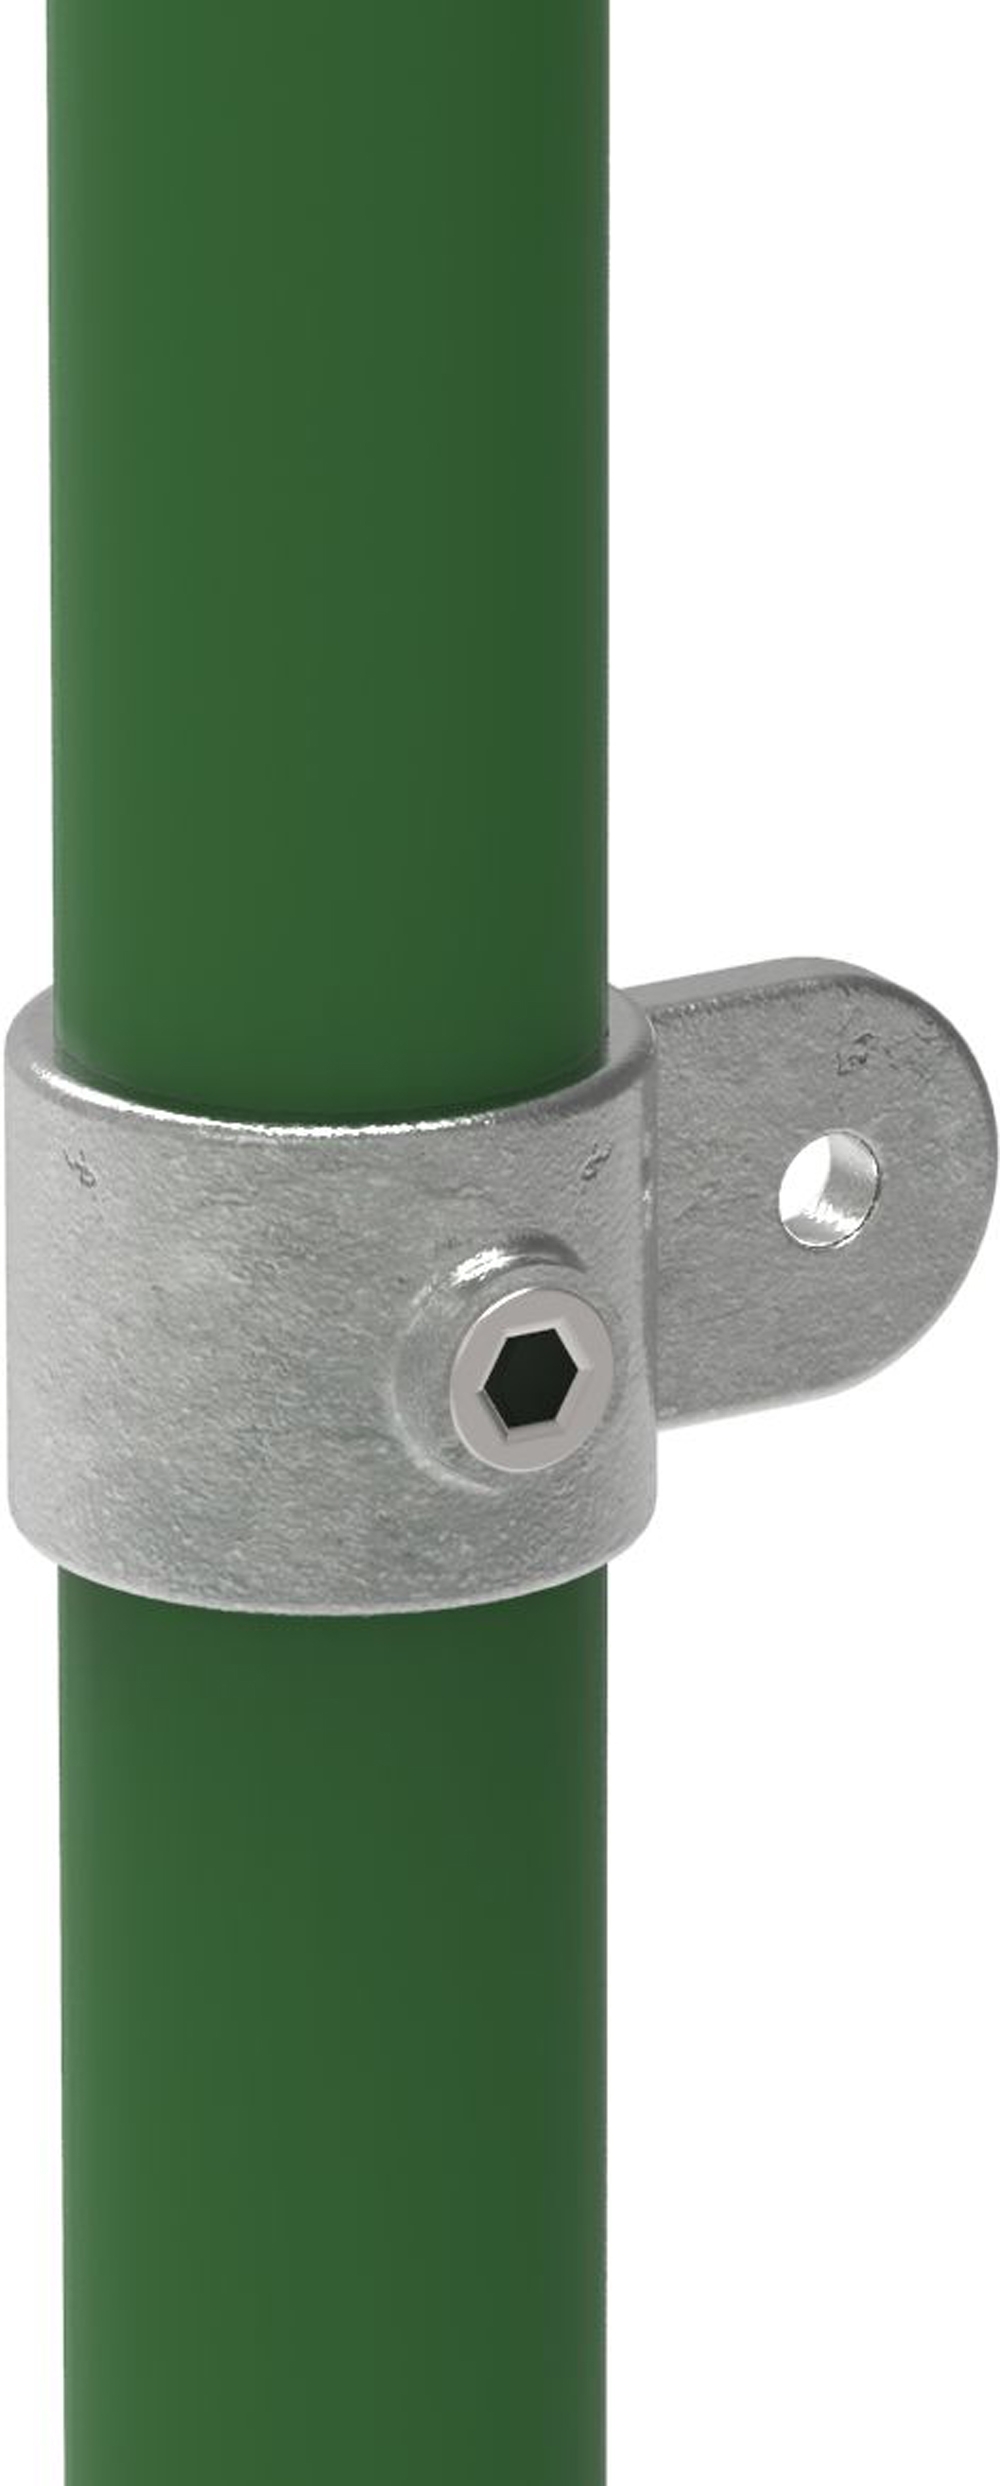 Rohrverbinder | Gelenkauge einfach | 173MA27 | 26,9 mm | 3/4" | Feuerverzinkt u. Elektrogalvanisiert